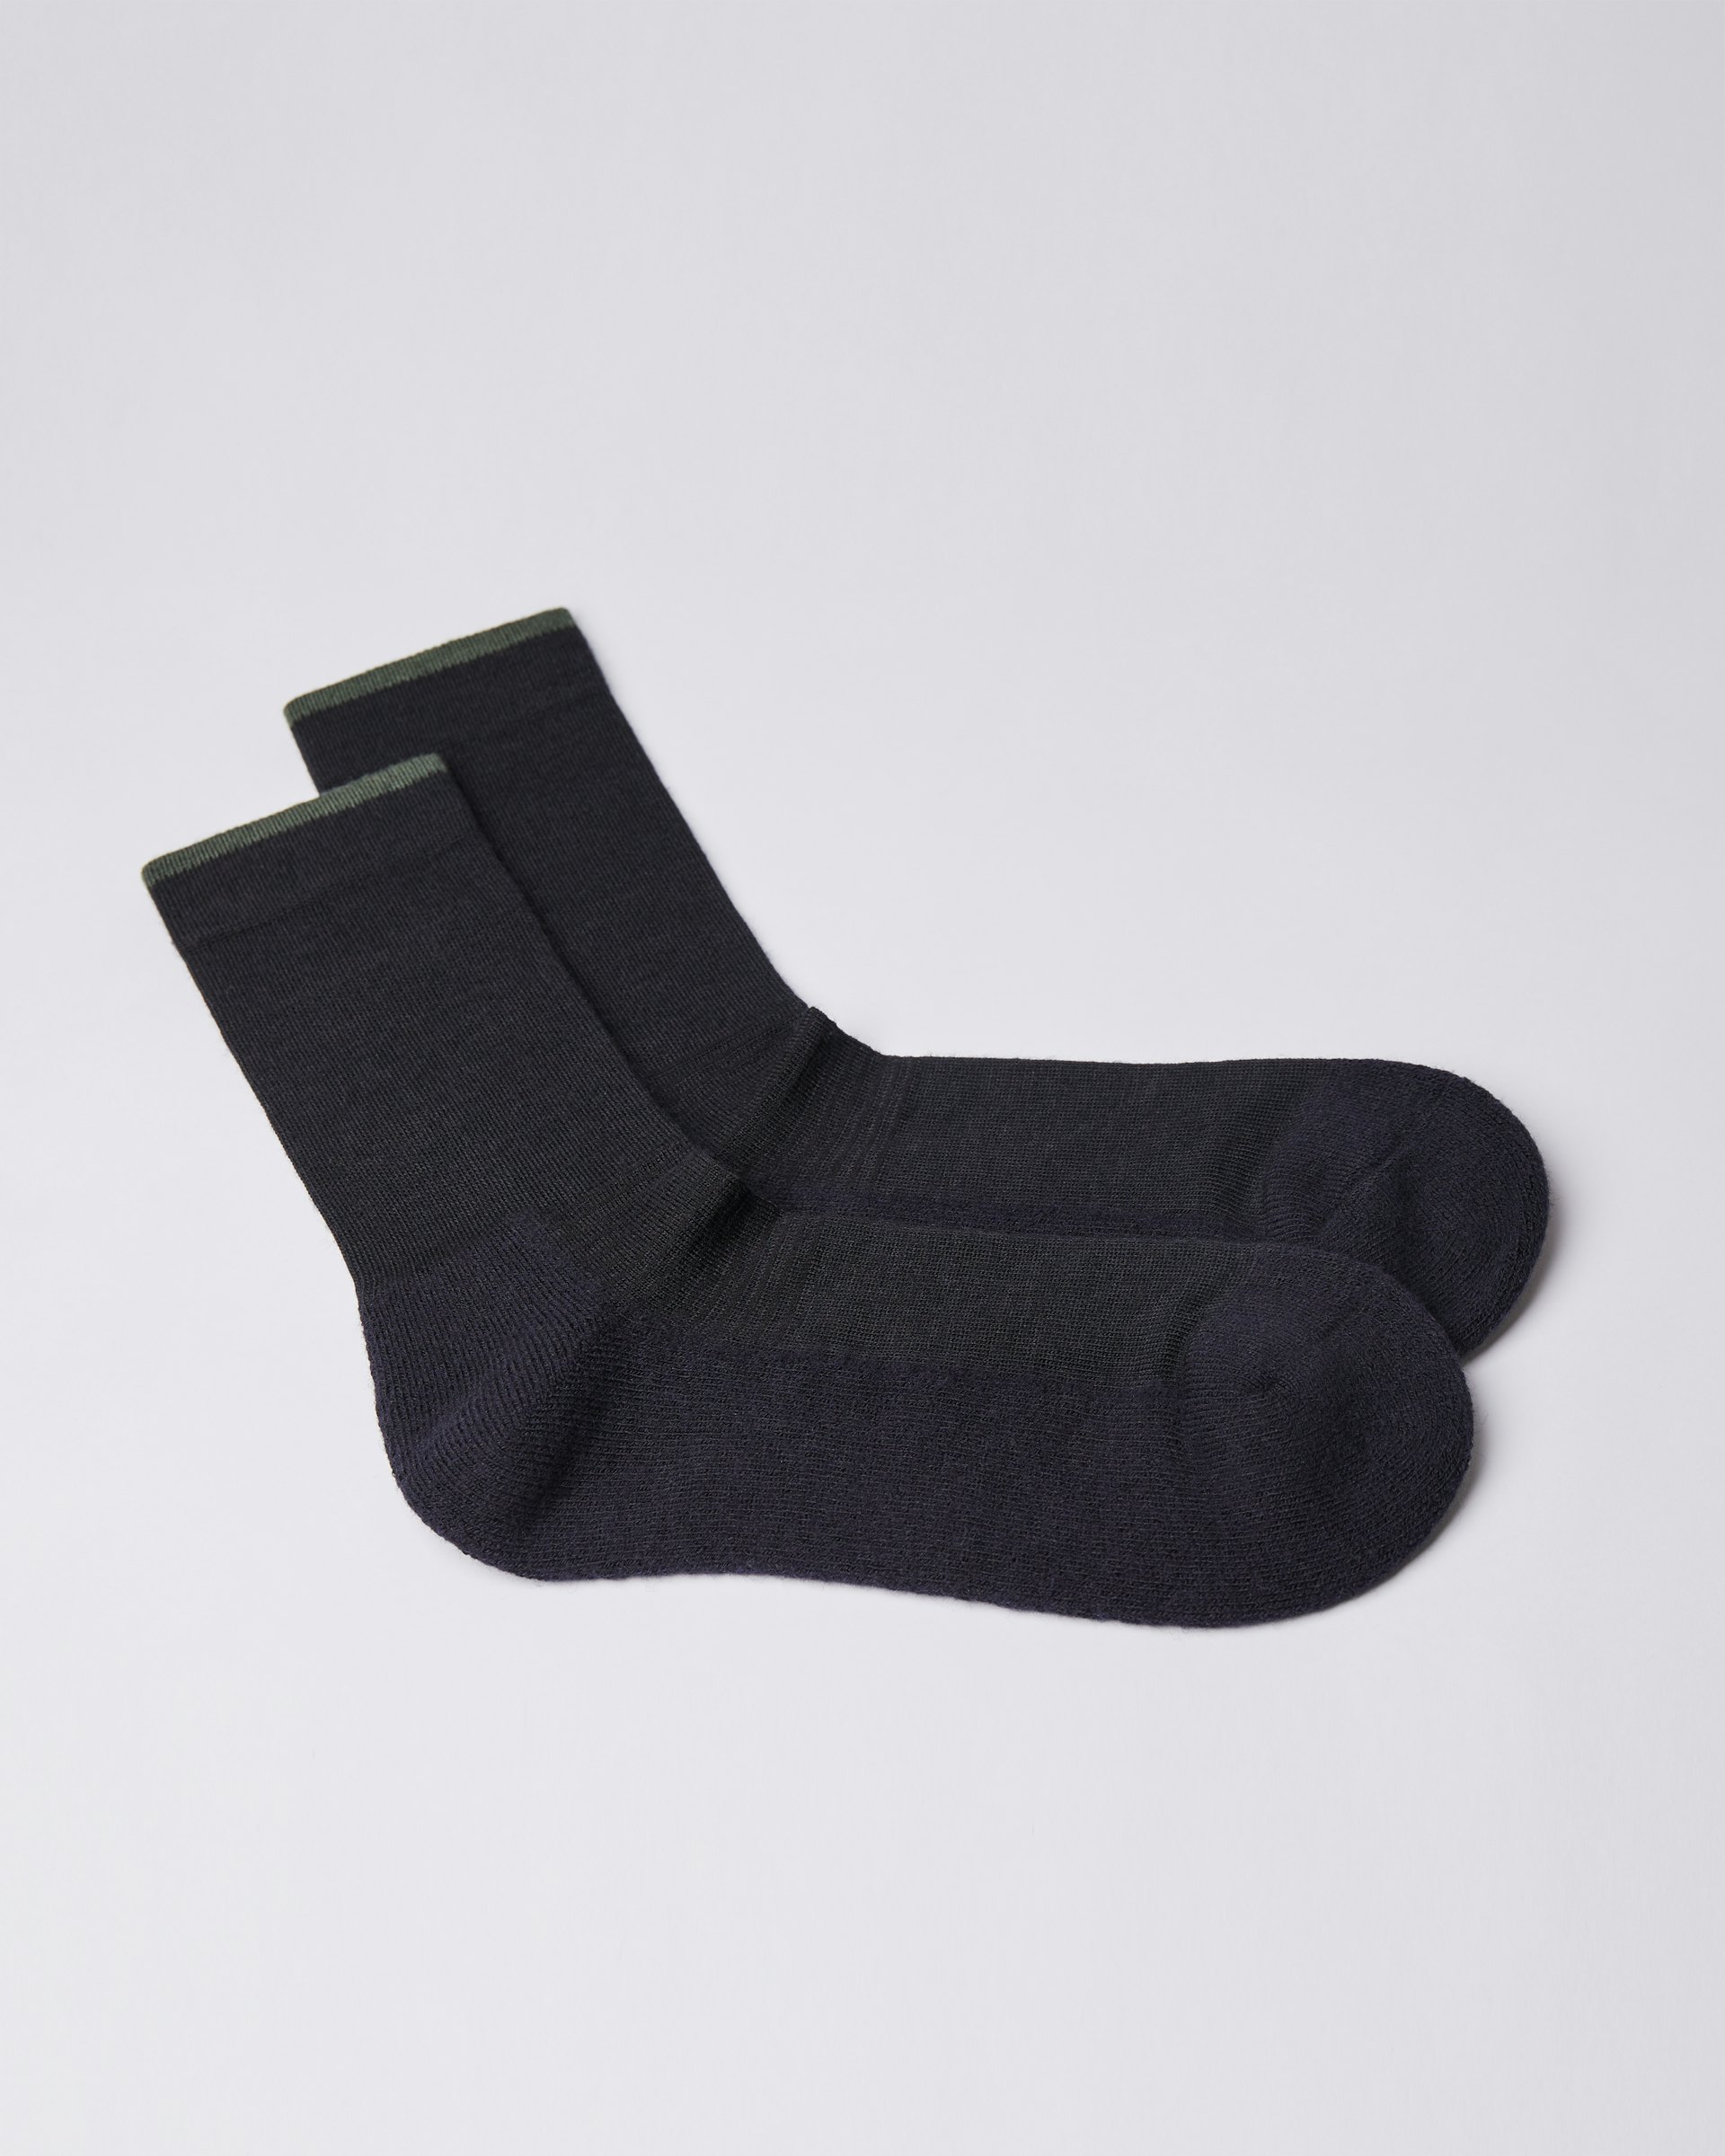 Wool Sock ist farbig black & green (3 oder 3)